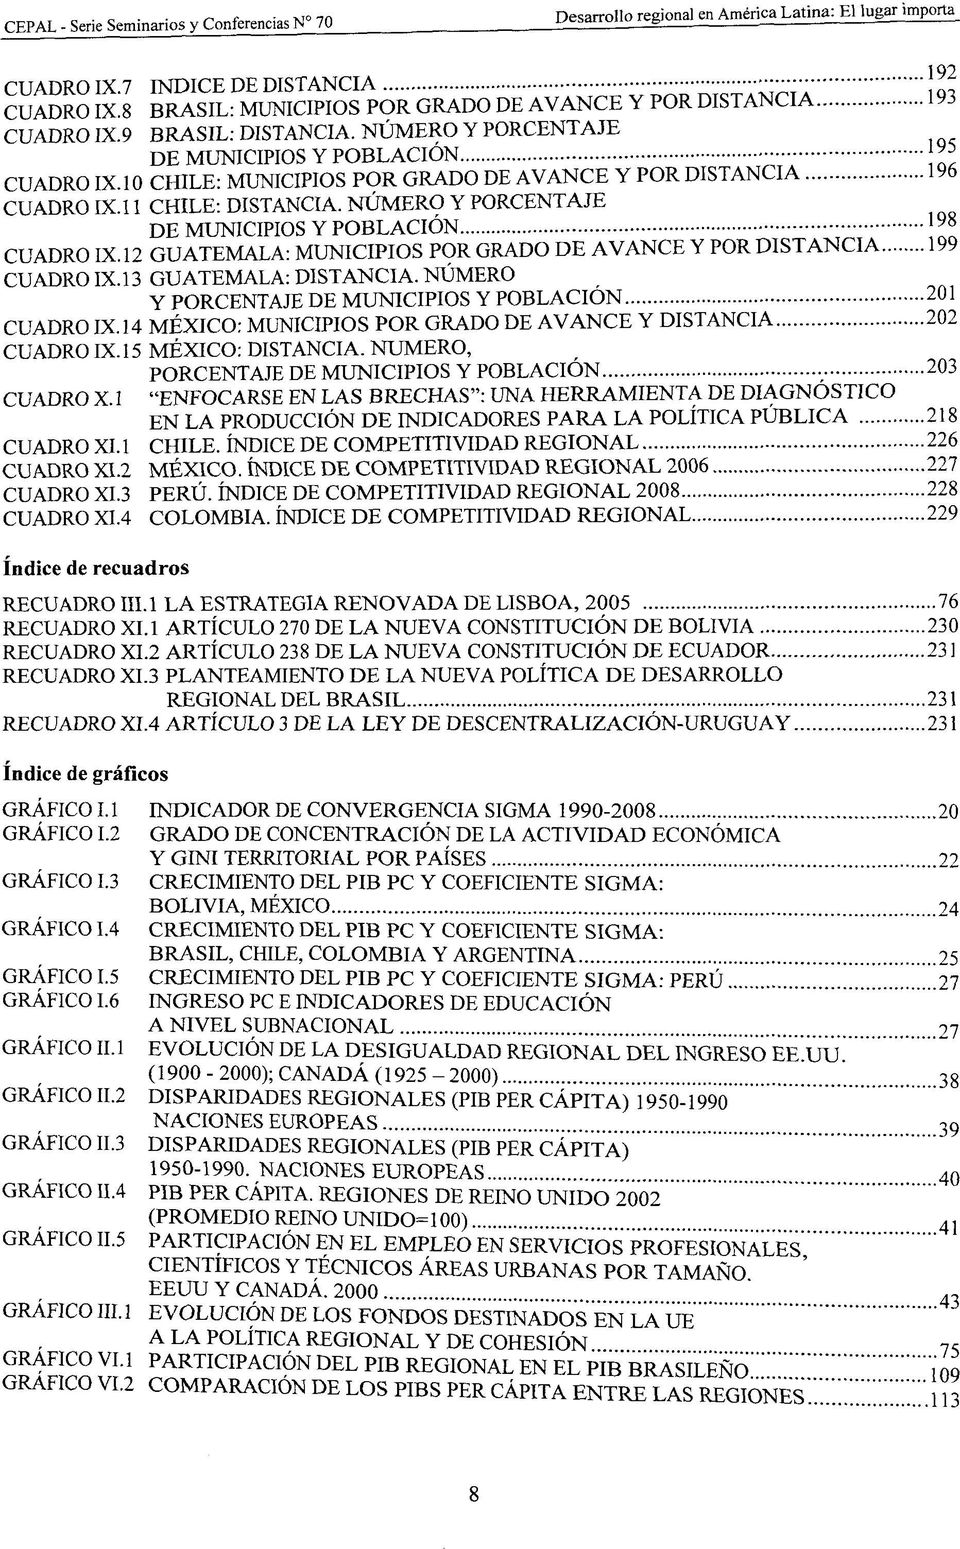 12 GUATEMALA: MUNICIPIOS POR GRADO DE AVANCE Y POR DISTANCIA 199 CUADRO IX. 13 GUATEMALA: DISTANCIA. NUMERO Y PORCENTAJE DE MUNICIPIOS Y POBLACION 201 CUADRO IX.